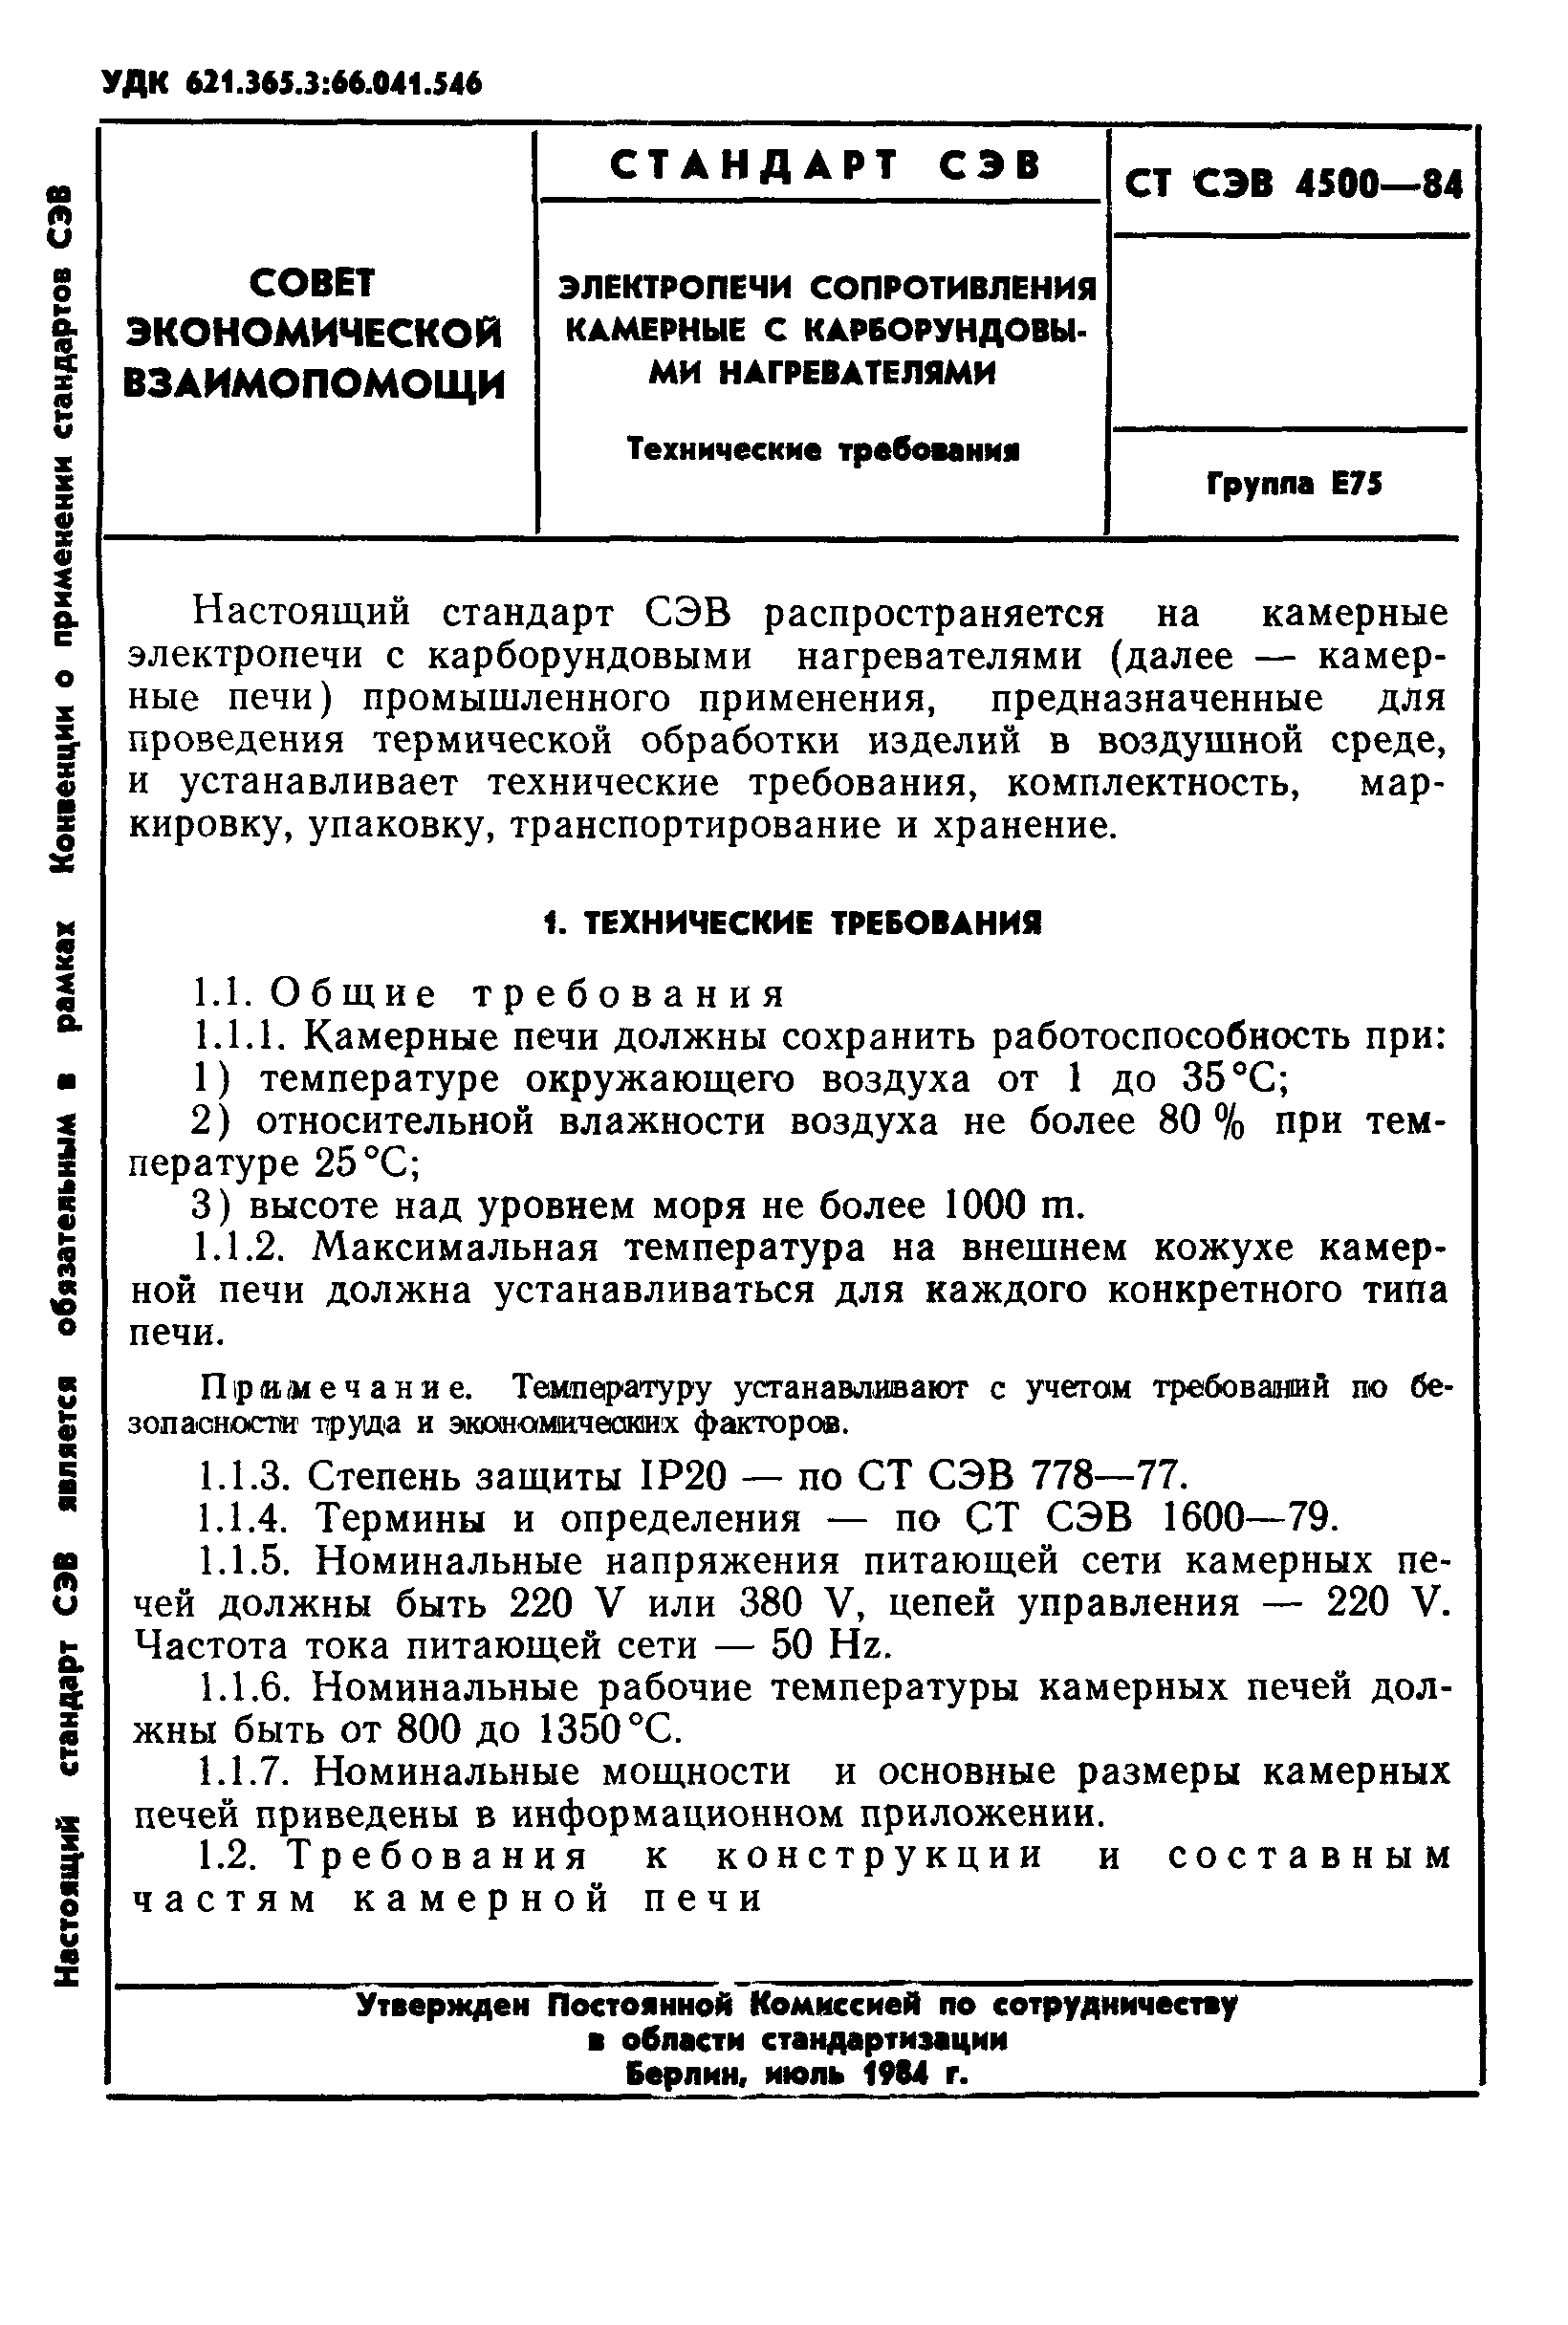 СТ СЭВ 4500-84